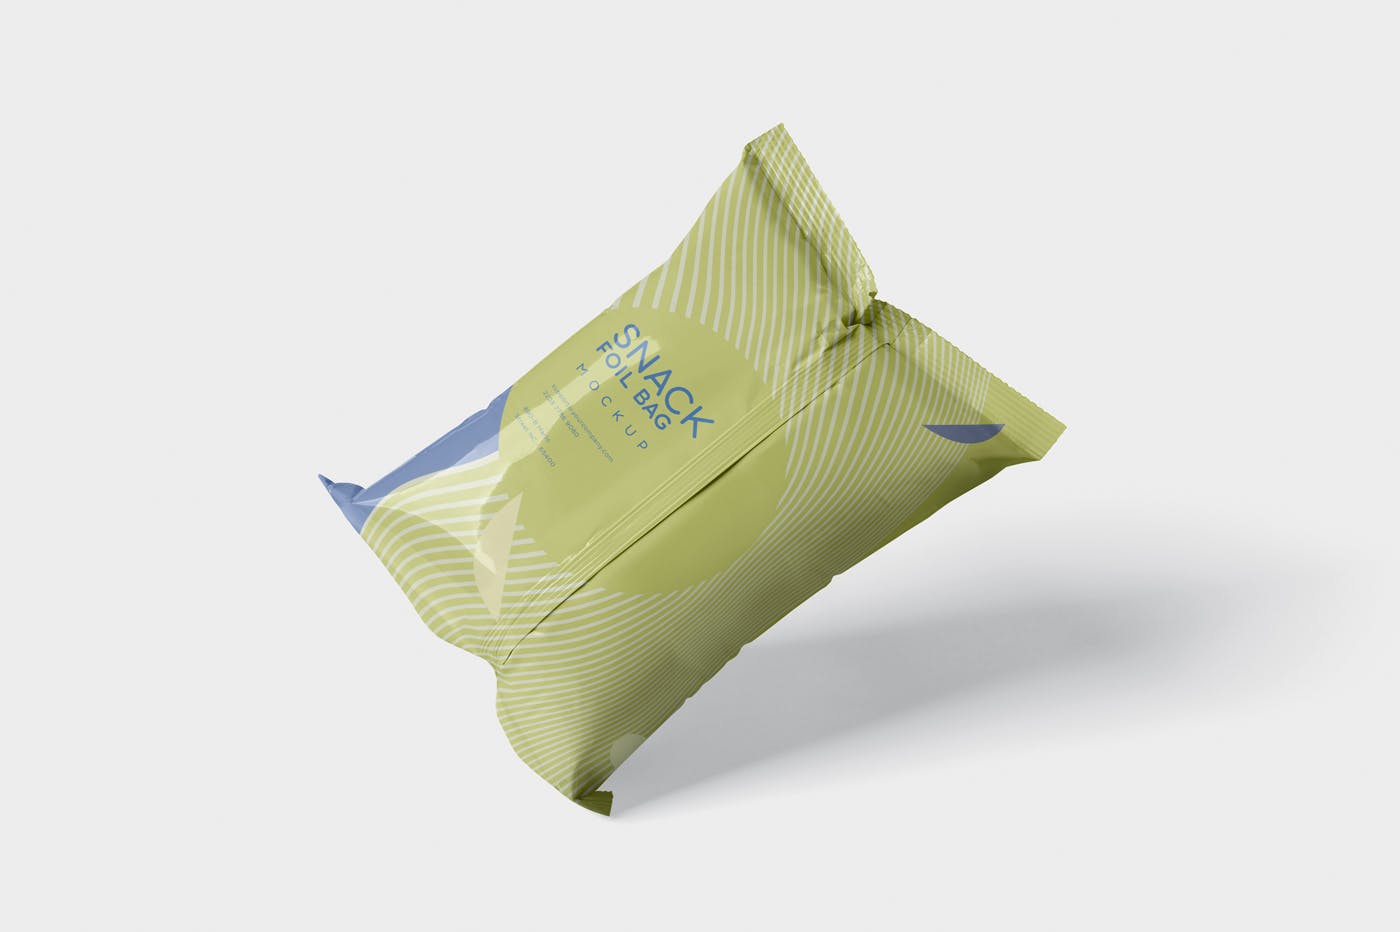 小吃零食铝箔袋/塑料包装袋设计图蚂蚁素材精选 Snack Foil Bag Mockup – Plastic插图(4)